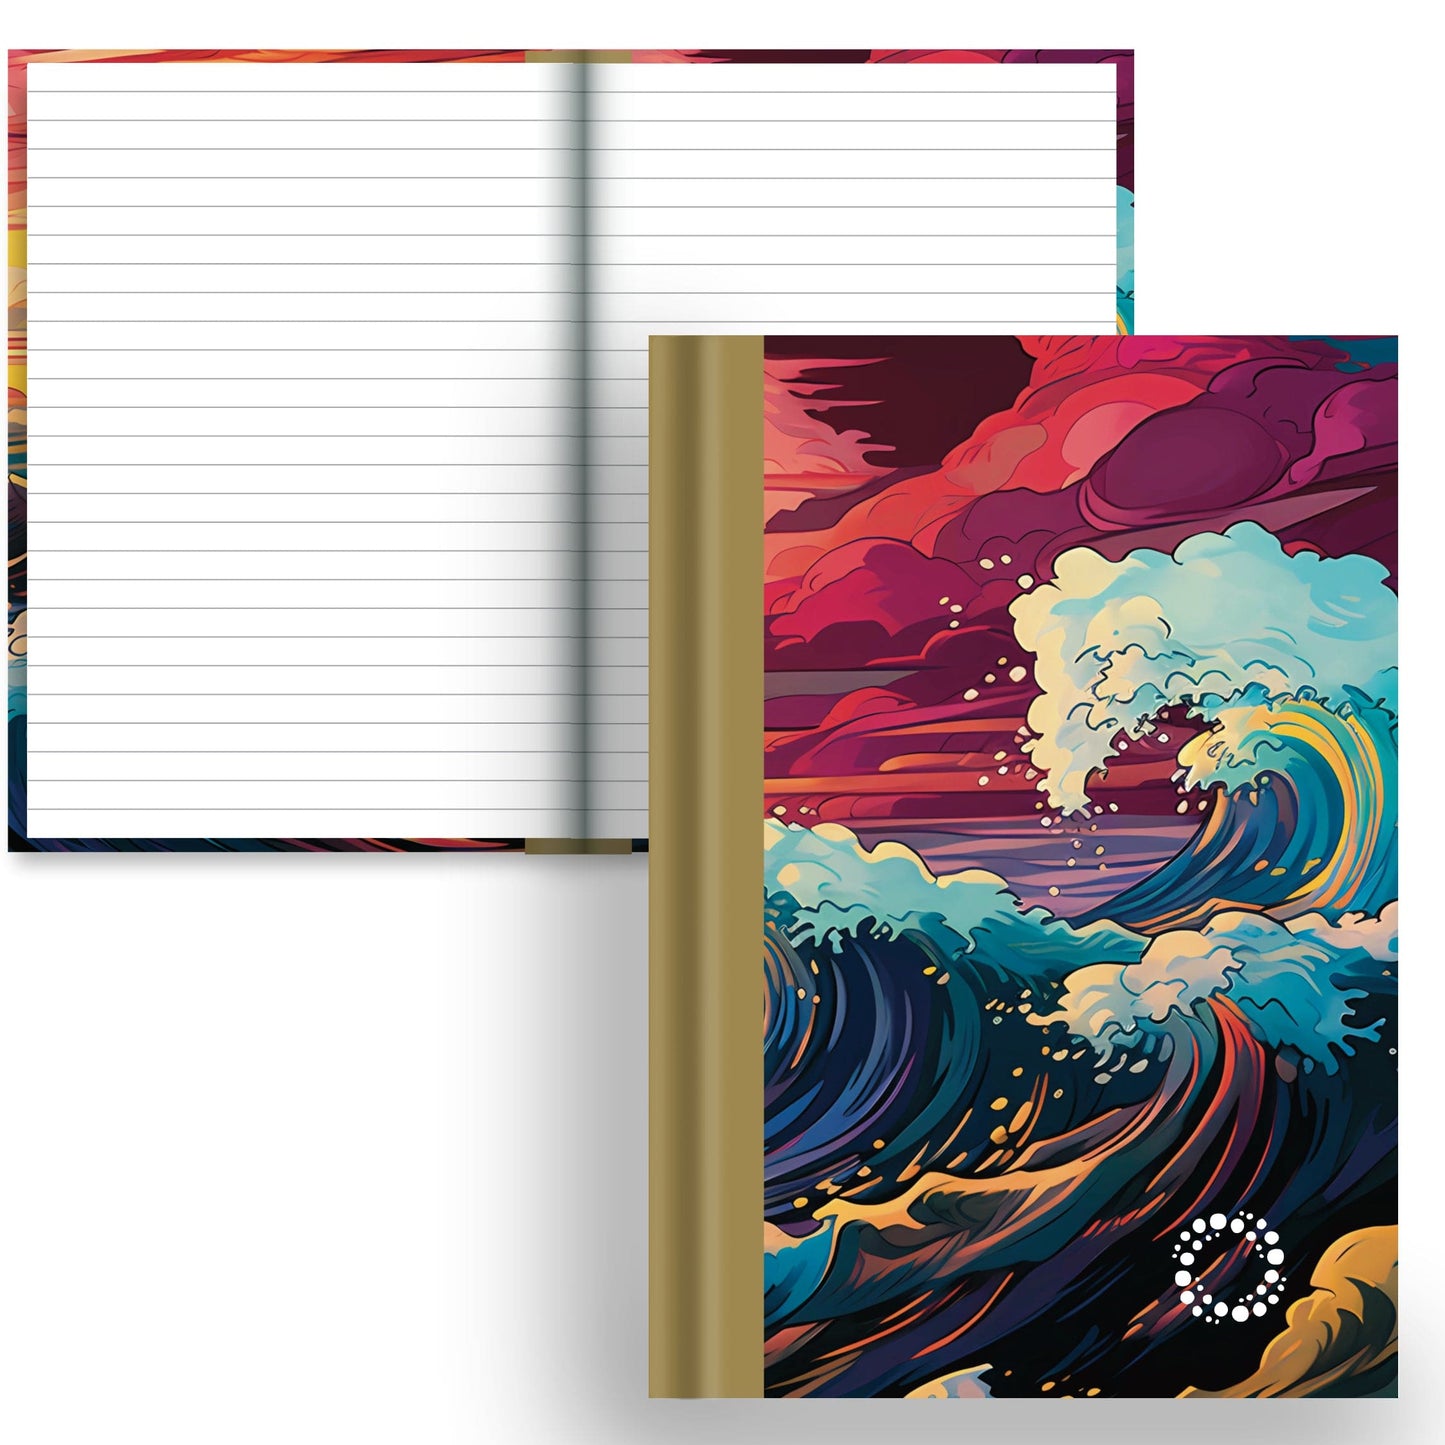 DayDot Journals Lined Paper Tempest - A5 Hardback Notebook